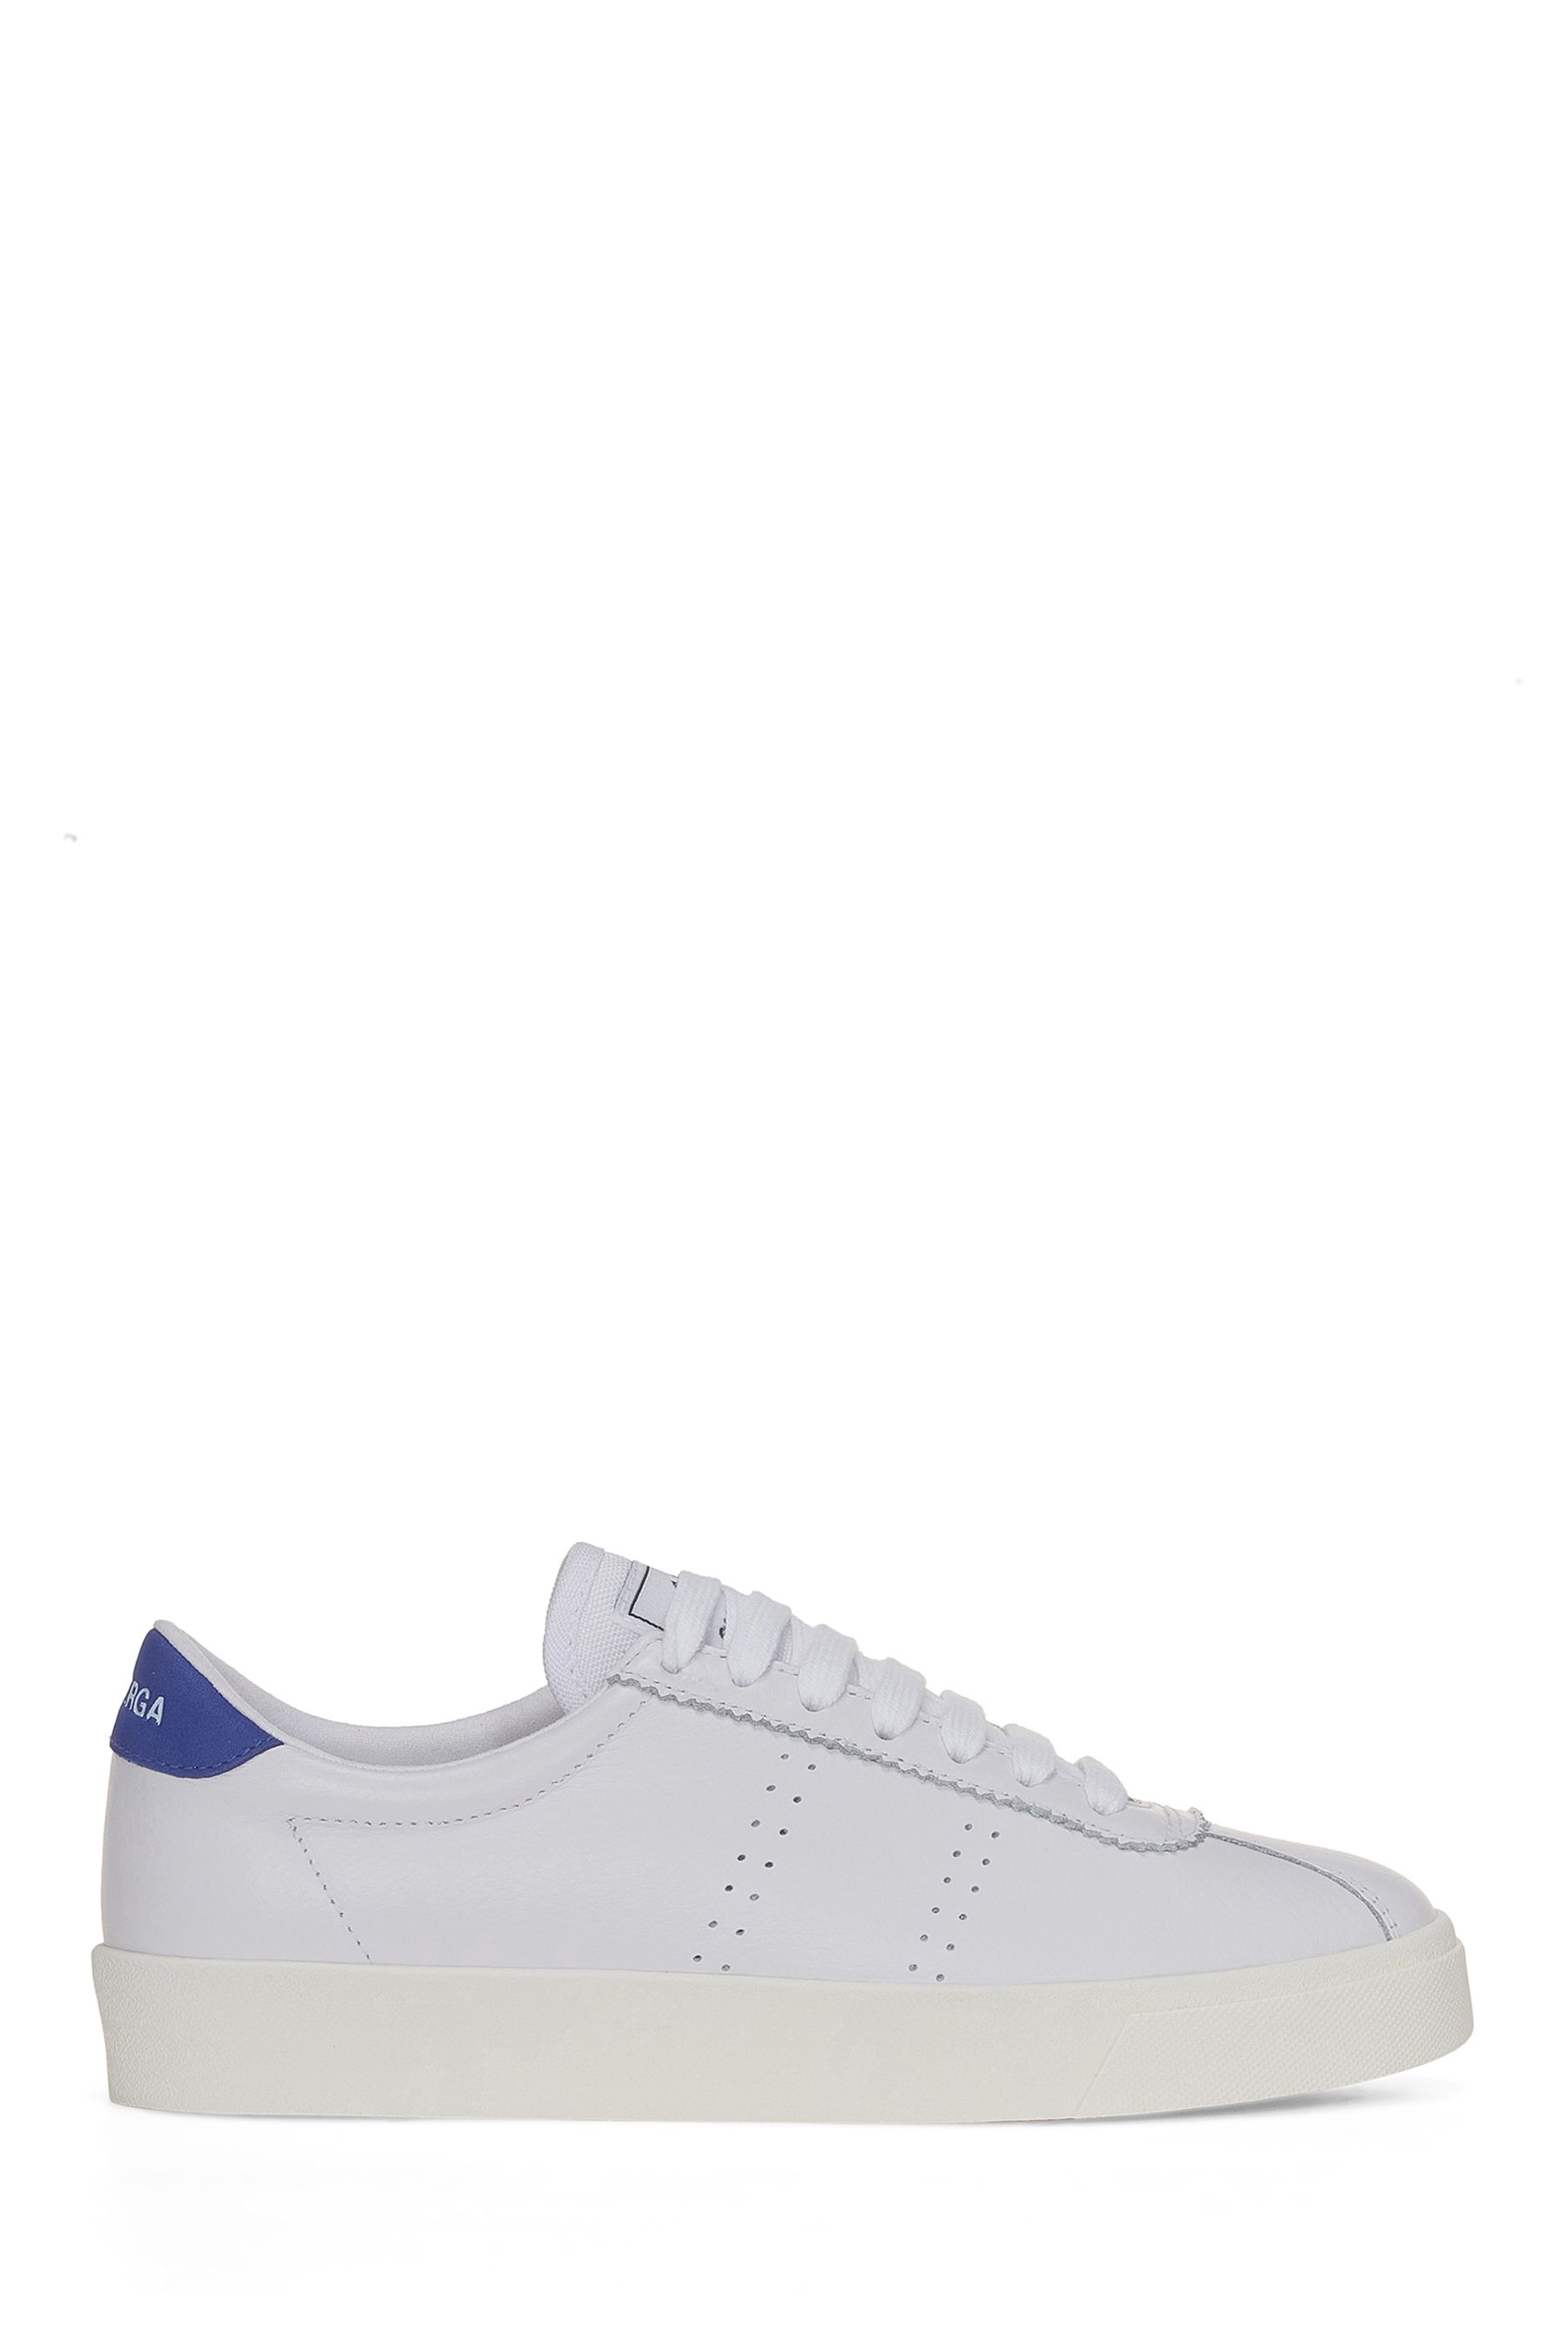 2843 Club S Comfort белые кожаные спортивные туфли Superga, белый